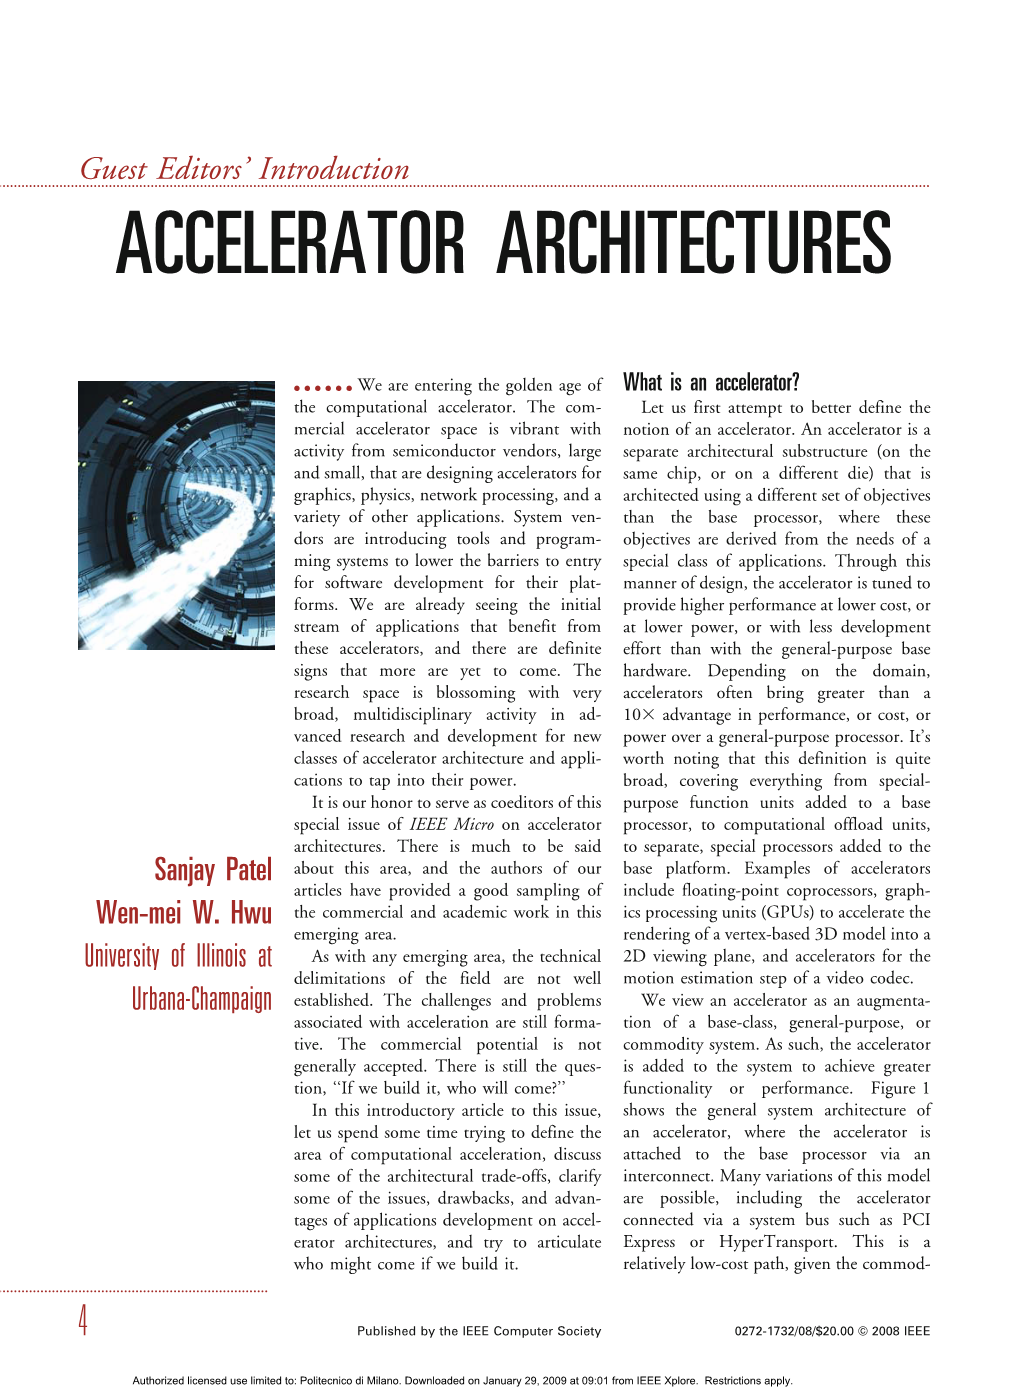 Accelerator Architectures